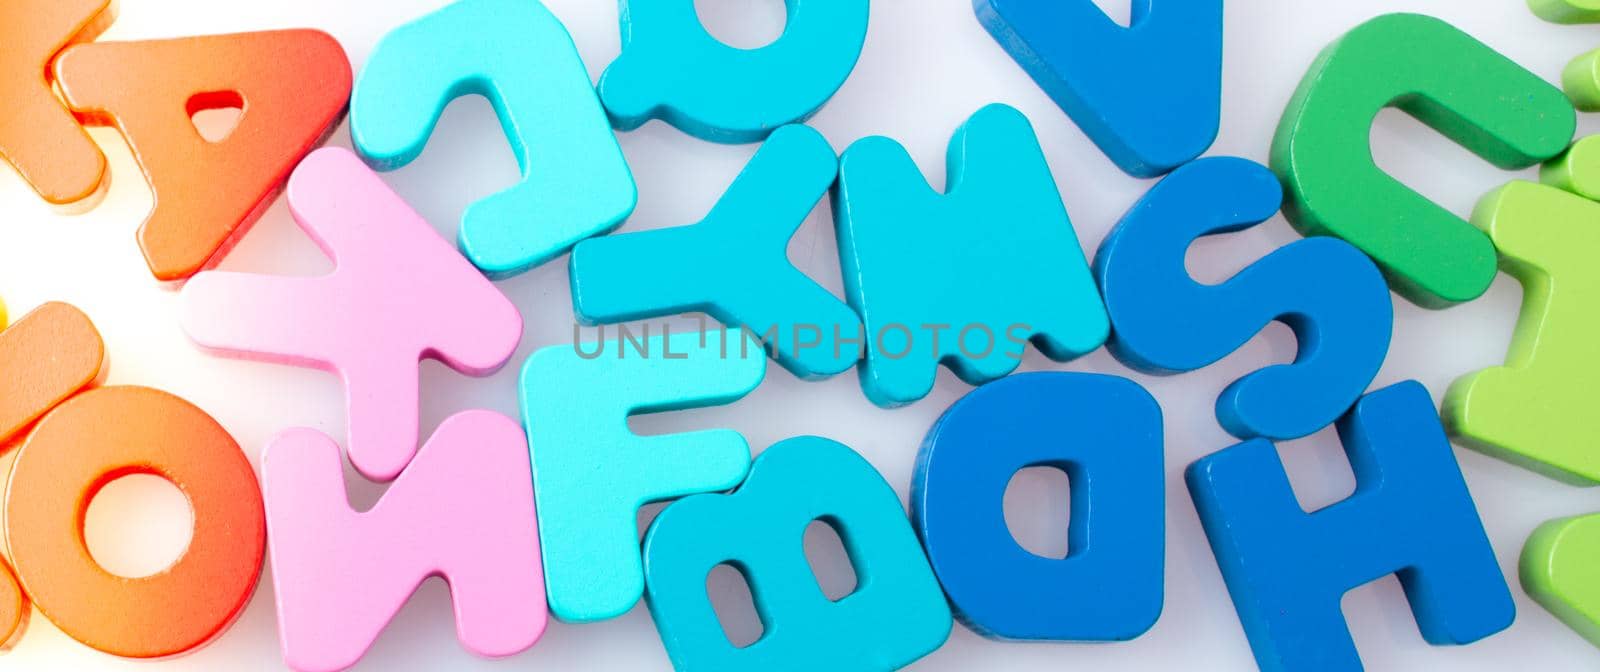 Colorful letter blocks scattered randomly on white by berkay